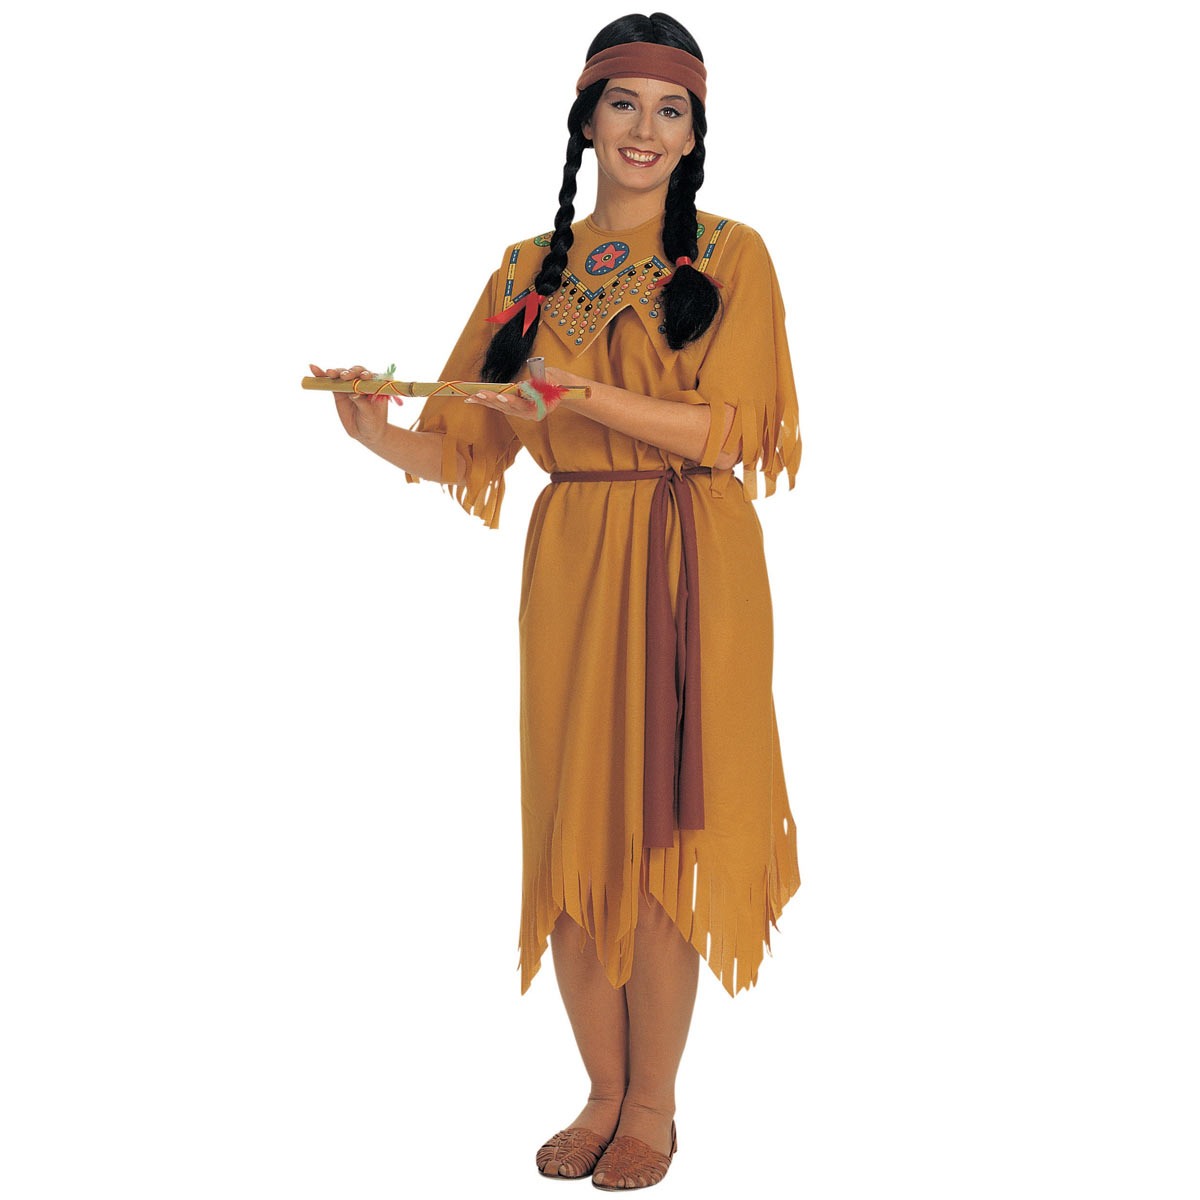 ポカホンタス コスチューム コスプレ 仮装 インディアン 衣装 ディズニー プリンセス ハロウィン Pocahontas